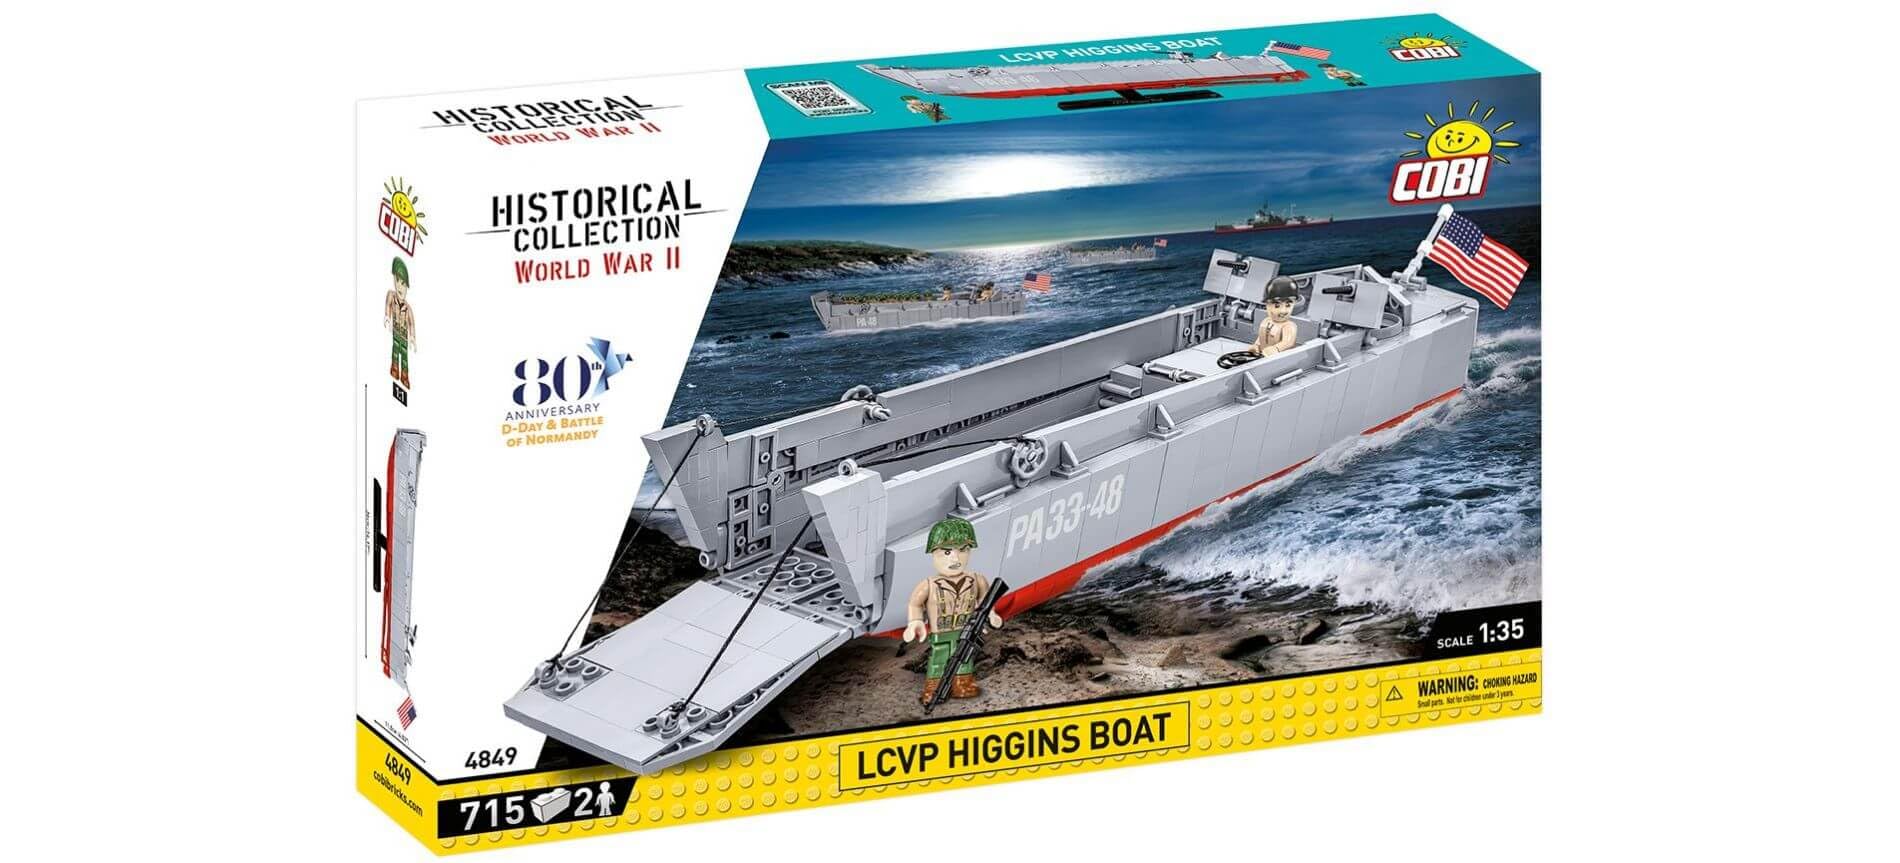 Cobi Historical Collection World War II 4849 LCVP Higgins Boat 4849